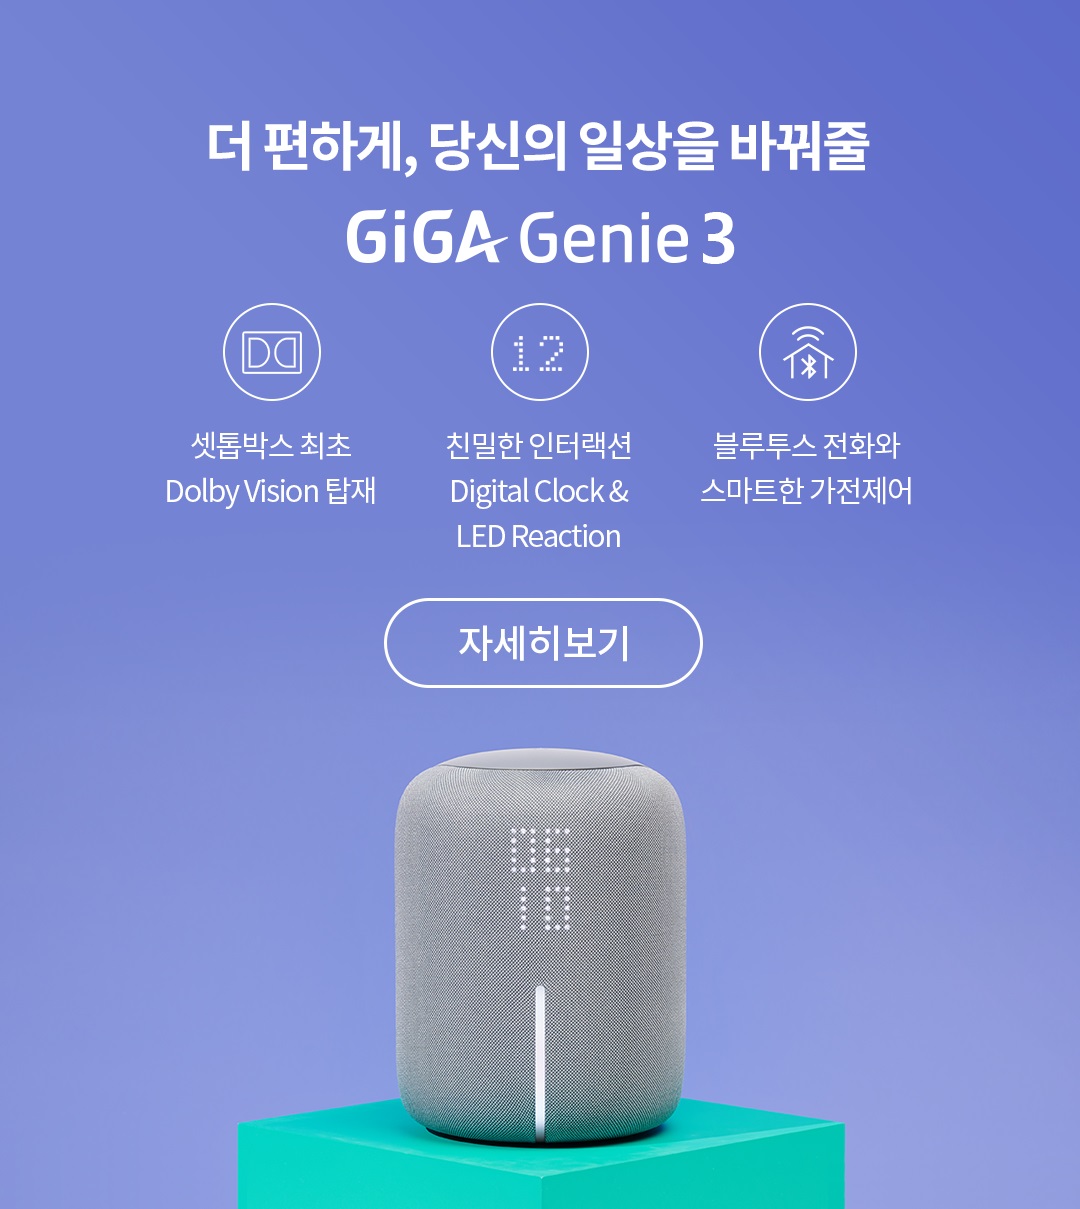 더 편하게, 당신의 일상을 바꿔줄 GiGa Genie3 셋톱박스 최초 Dolby Vision 탑재 친밀한 인터랙션 Digital Clock & LED Reaction 블루투스 전화와 스마트한 가전제어 자세히보기